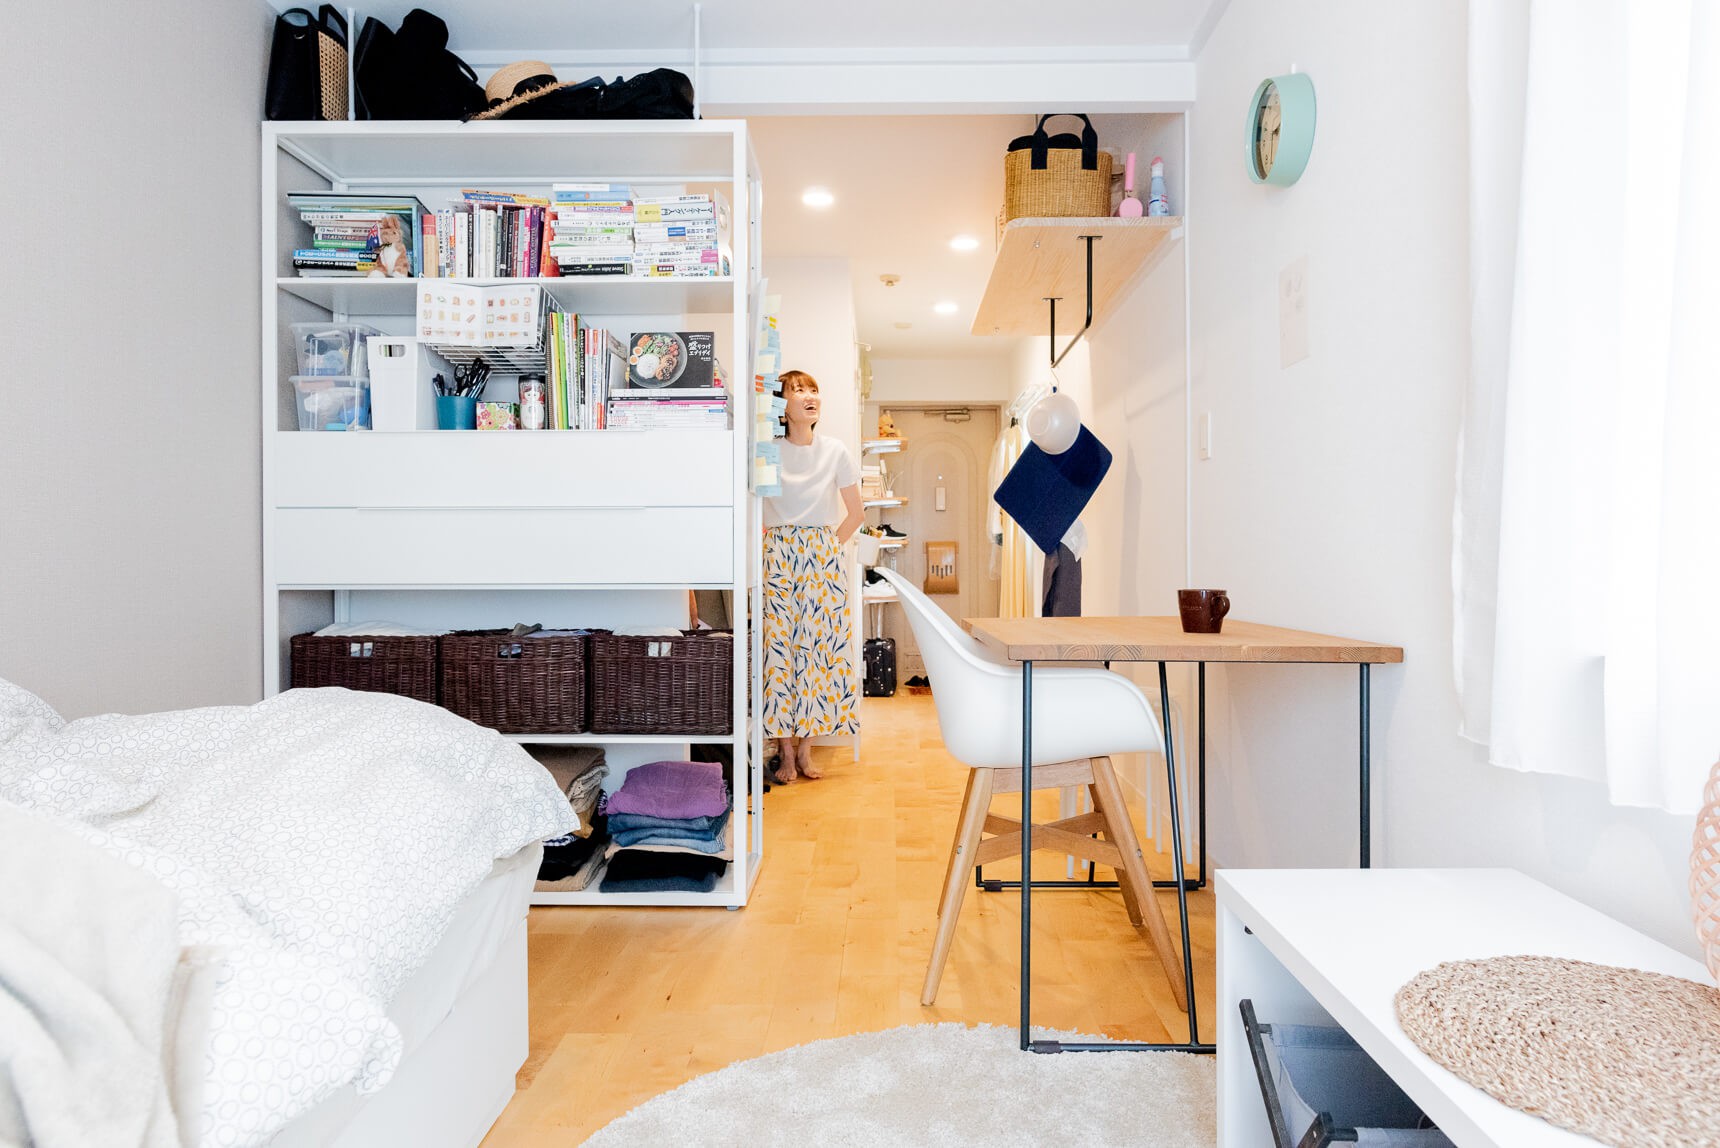 Sống một mình, căn hộ của cô gái Nhật Bản được sắp xếp ấn tượng khiến ai cũng muốn học tập - Ảnh 4.